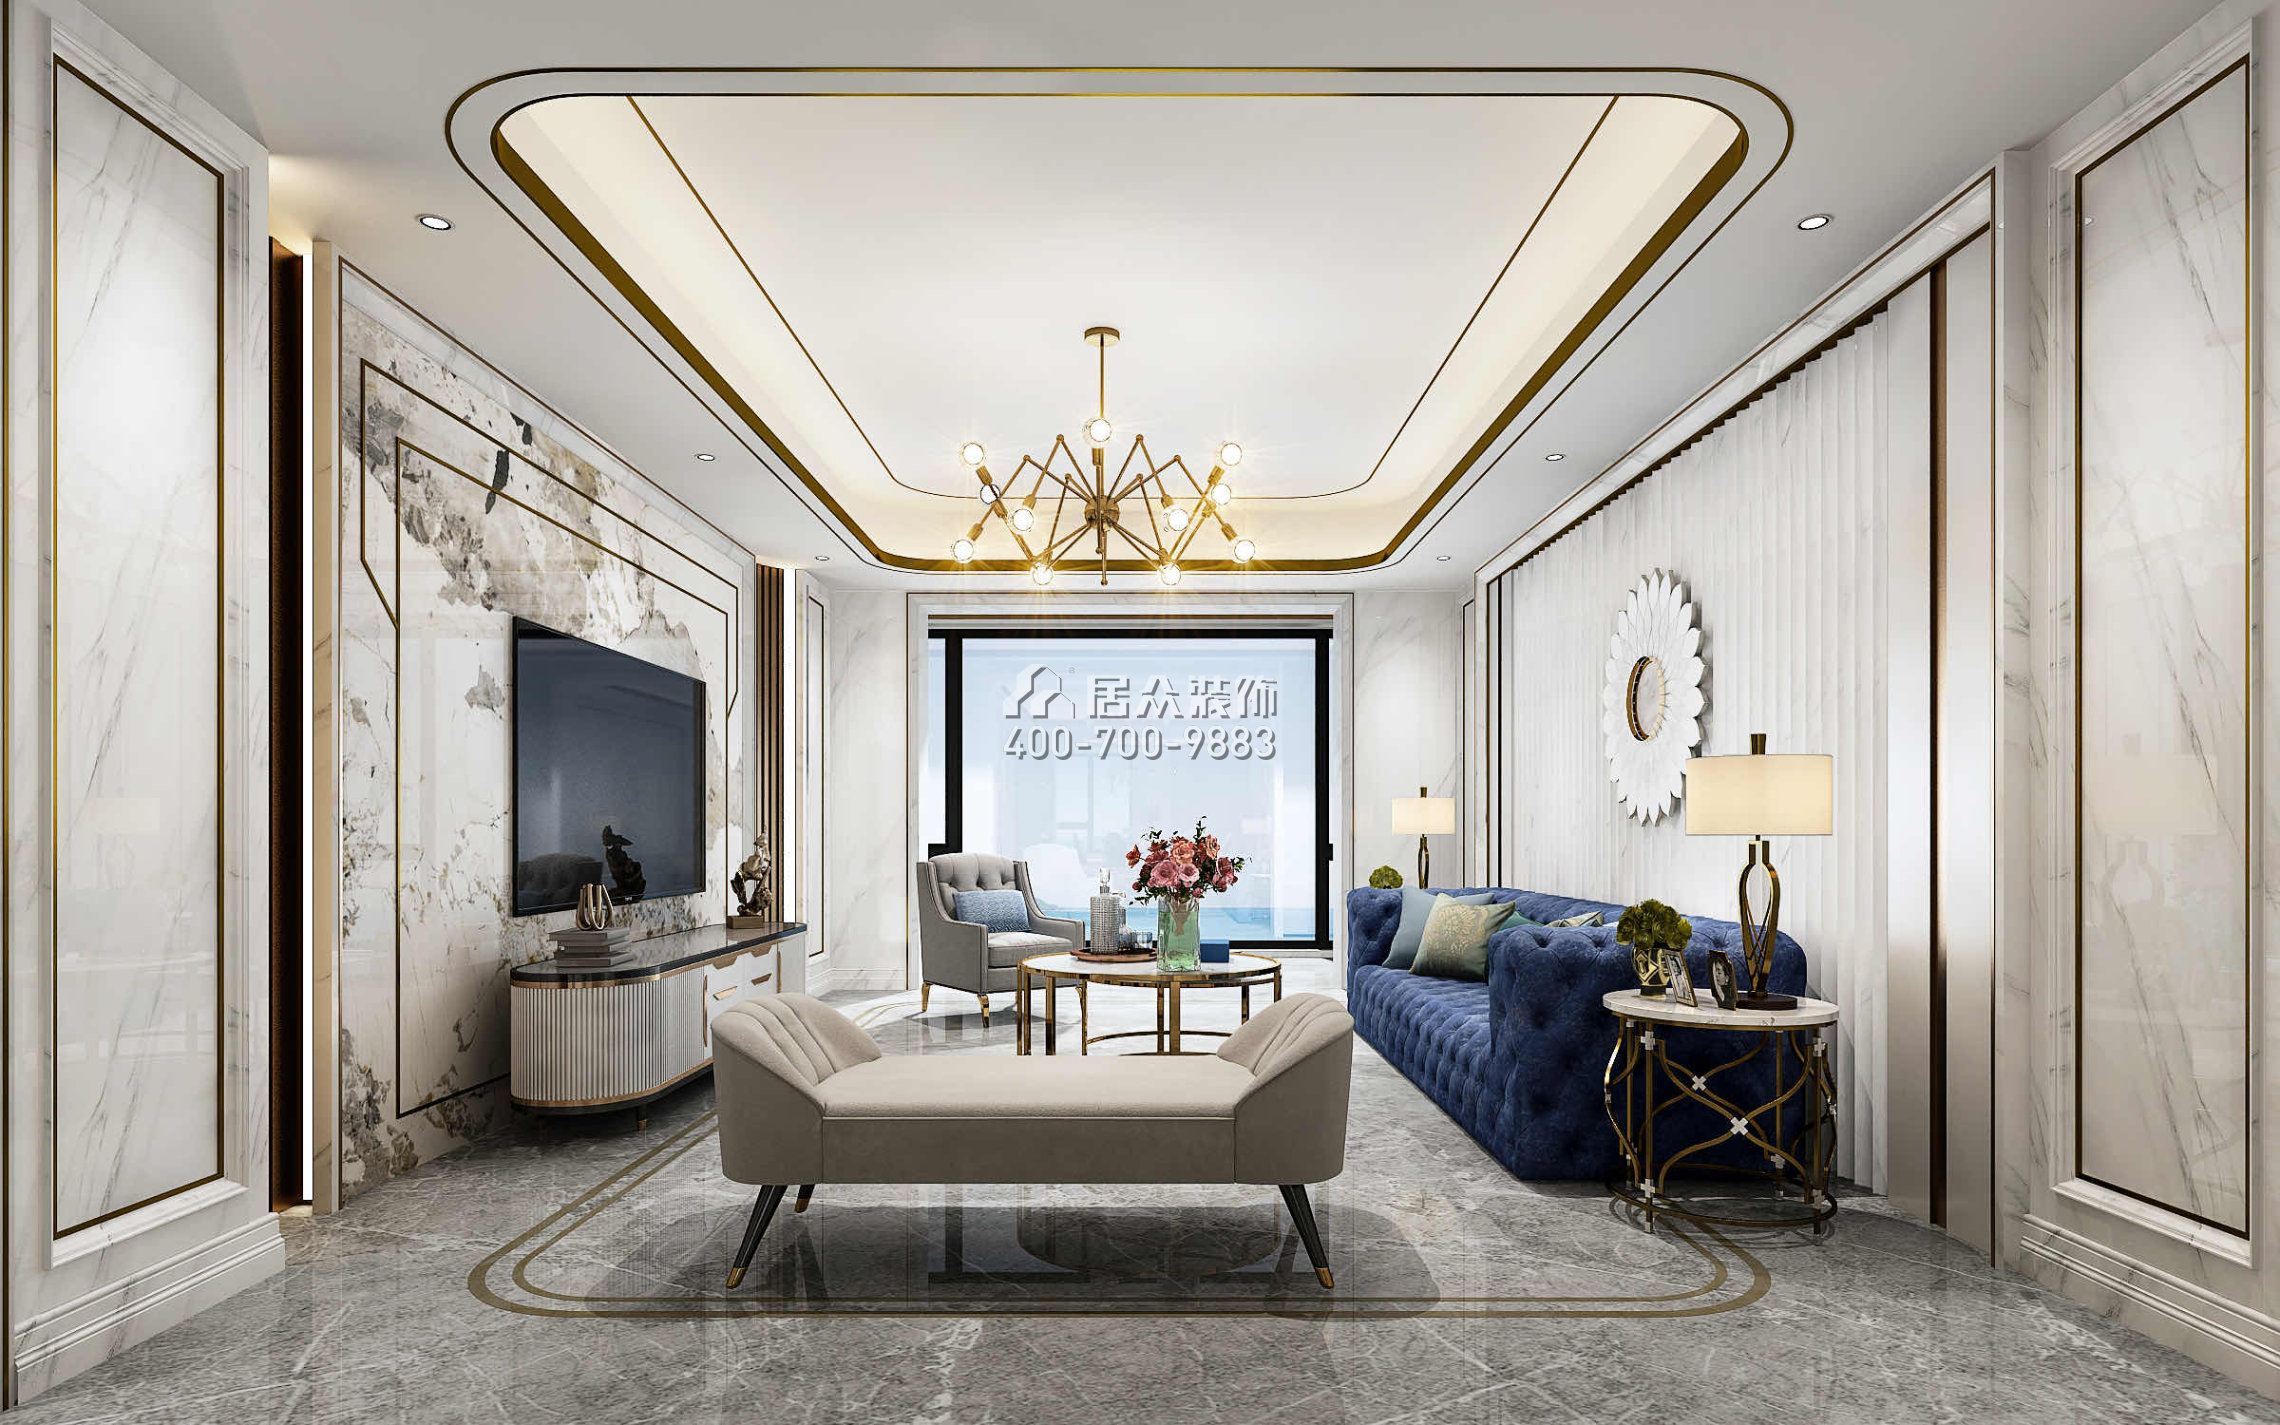 国贸天琴湾150平方米新古典风格平层户型客厅装修效果图